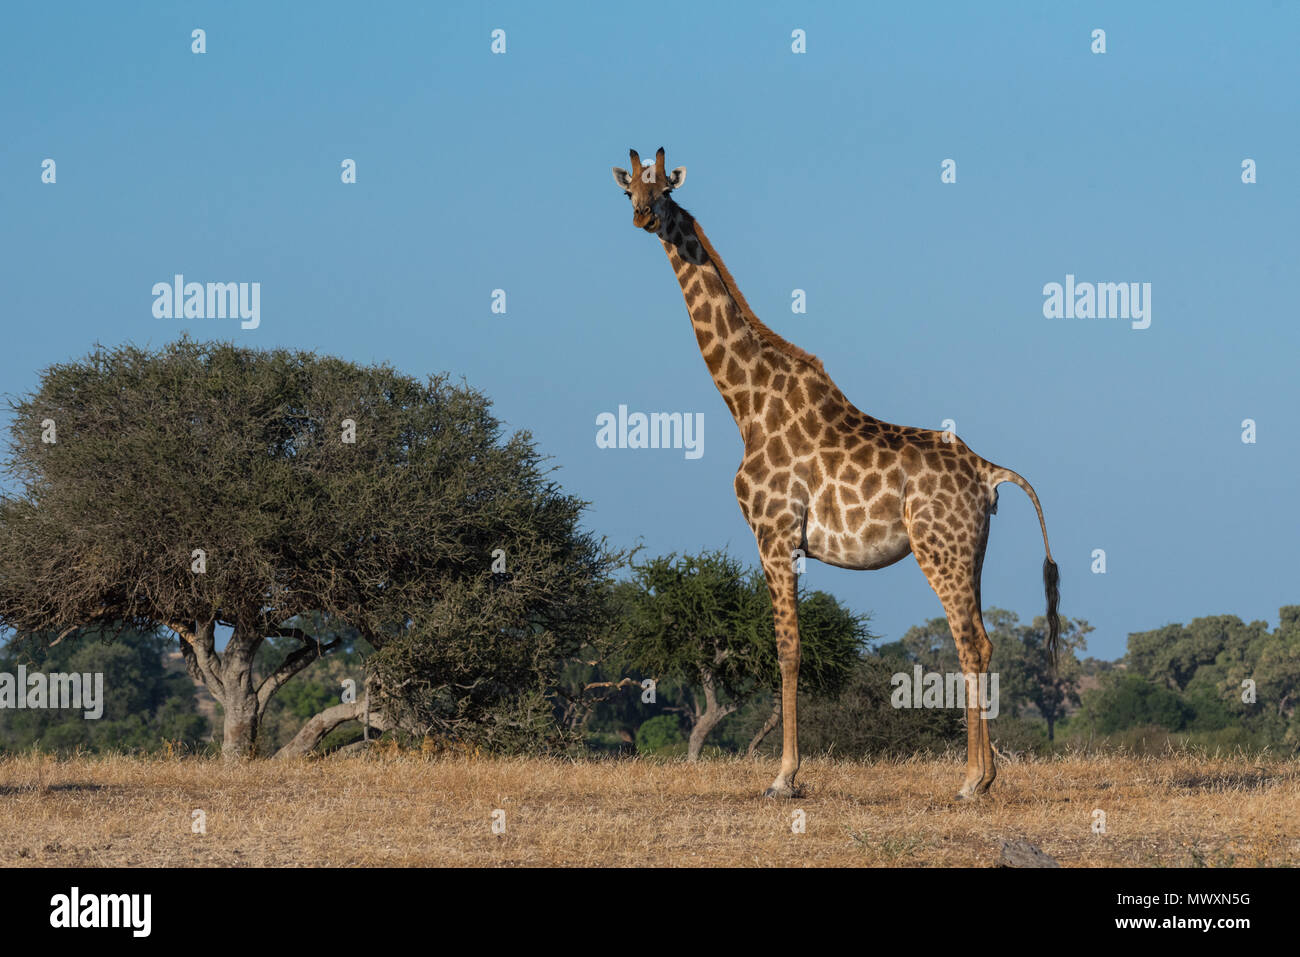 Southern African Giraffe at Mashatu in Botswana Stock Photo